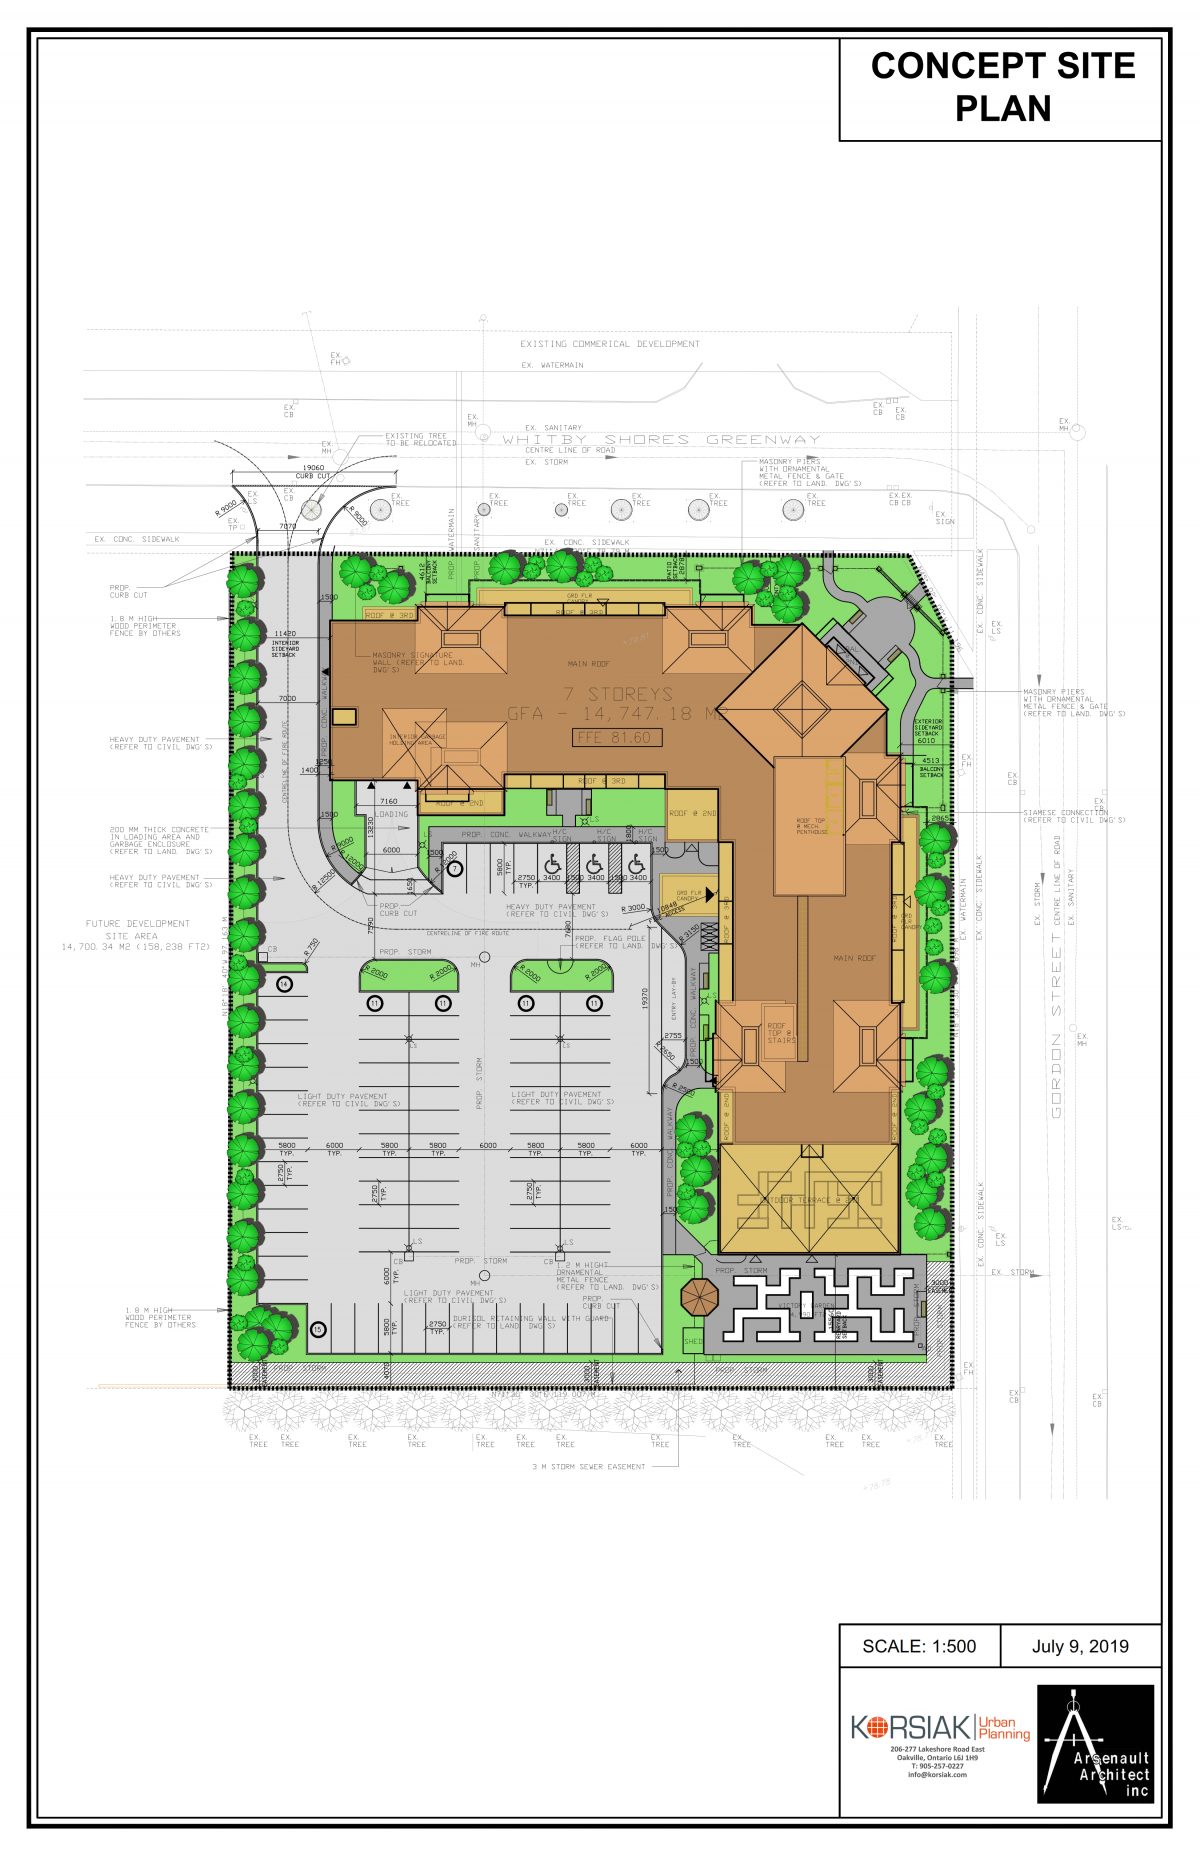 Korsiak Urban Planning - Whitby Portfolio - Whitby Shores, Infill Development - Whitby, Ontario